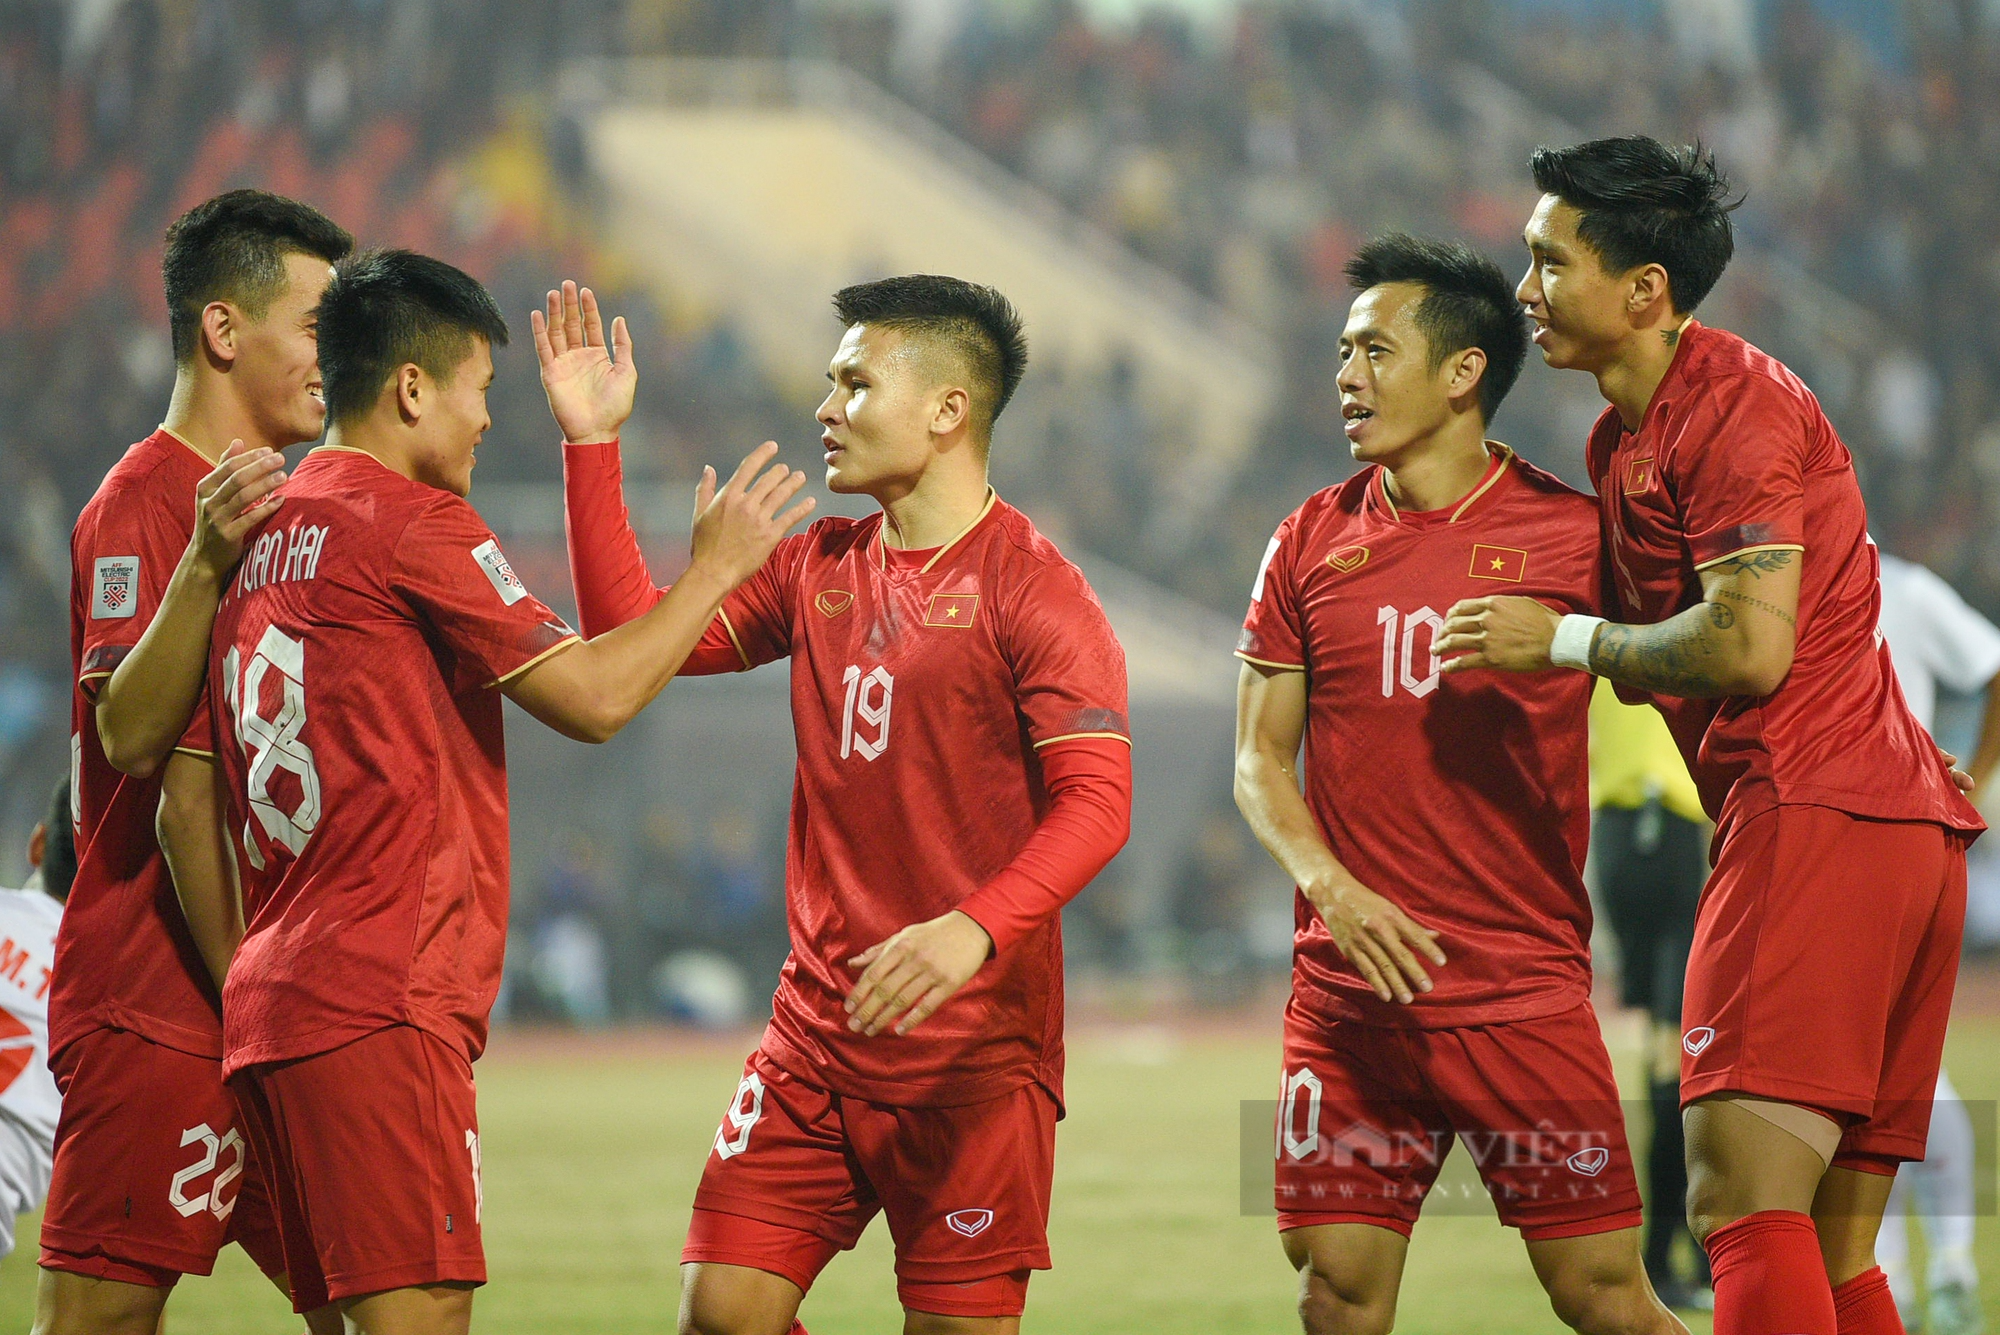 Châu Ngọc Quang ghi siêu phẩm giúp tuyển Việt Nam giành vé vào bán kết AFF Cup 2022 - Ảnh 3.